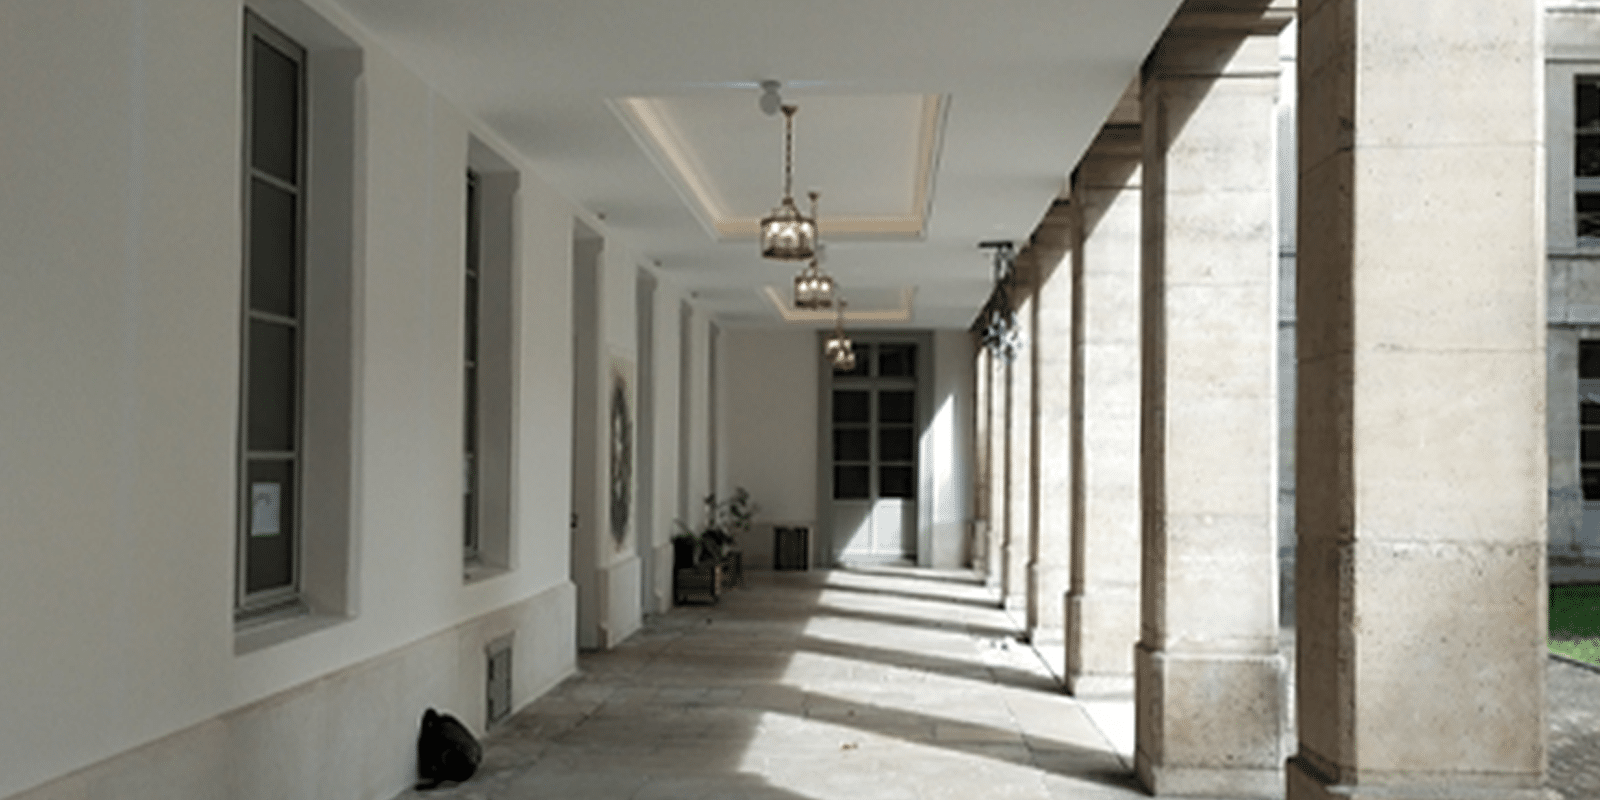 Rénovation de la cour d’honneur, Partie 2 – Paris